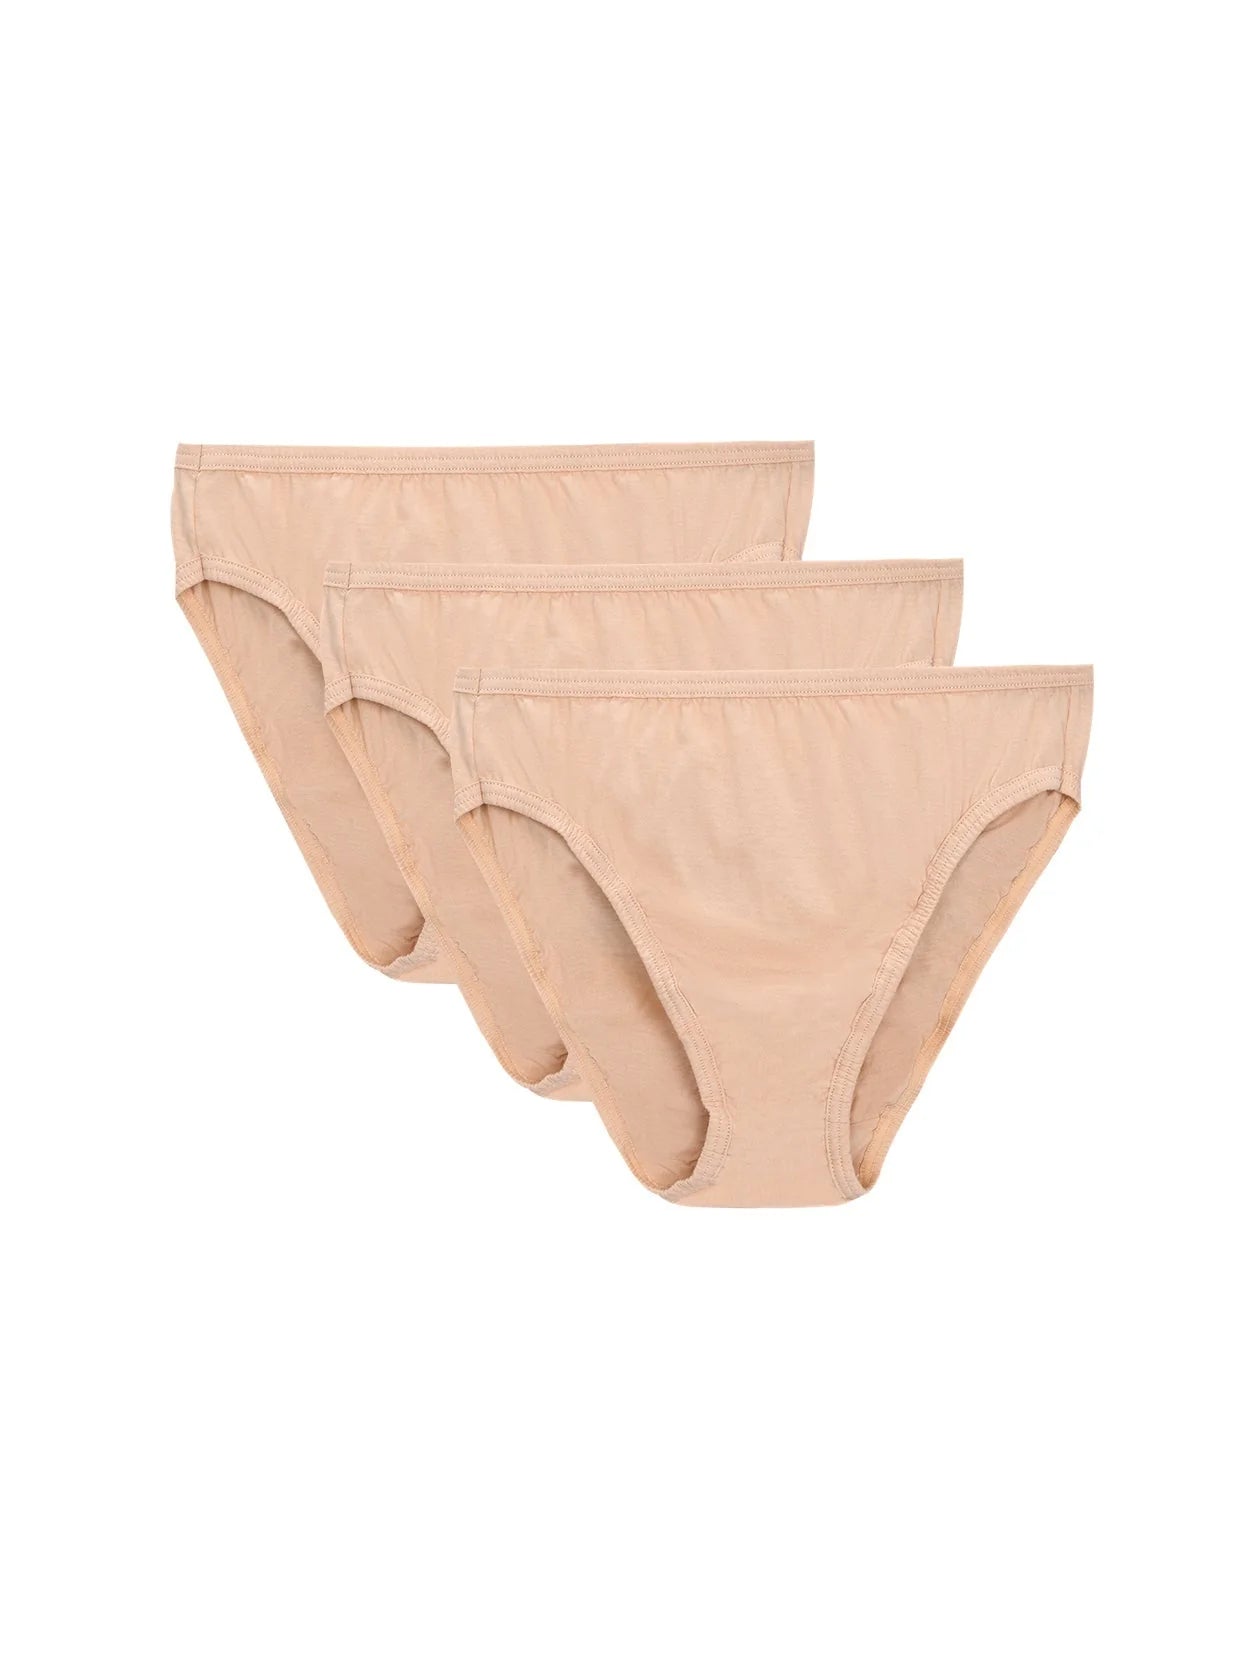 https://wingslove.com/cdn/shop/products/high-cut-brief-cotton-plus-size-underwear-3-pcs-white-pink-nude-569257.webp?v=1683887359